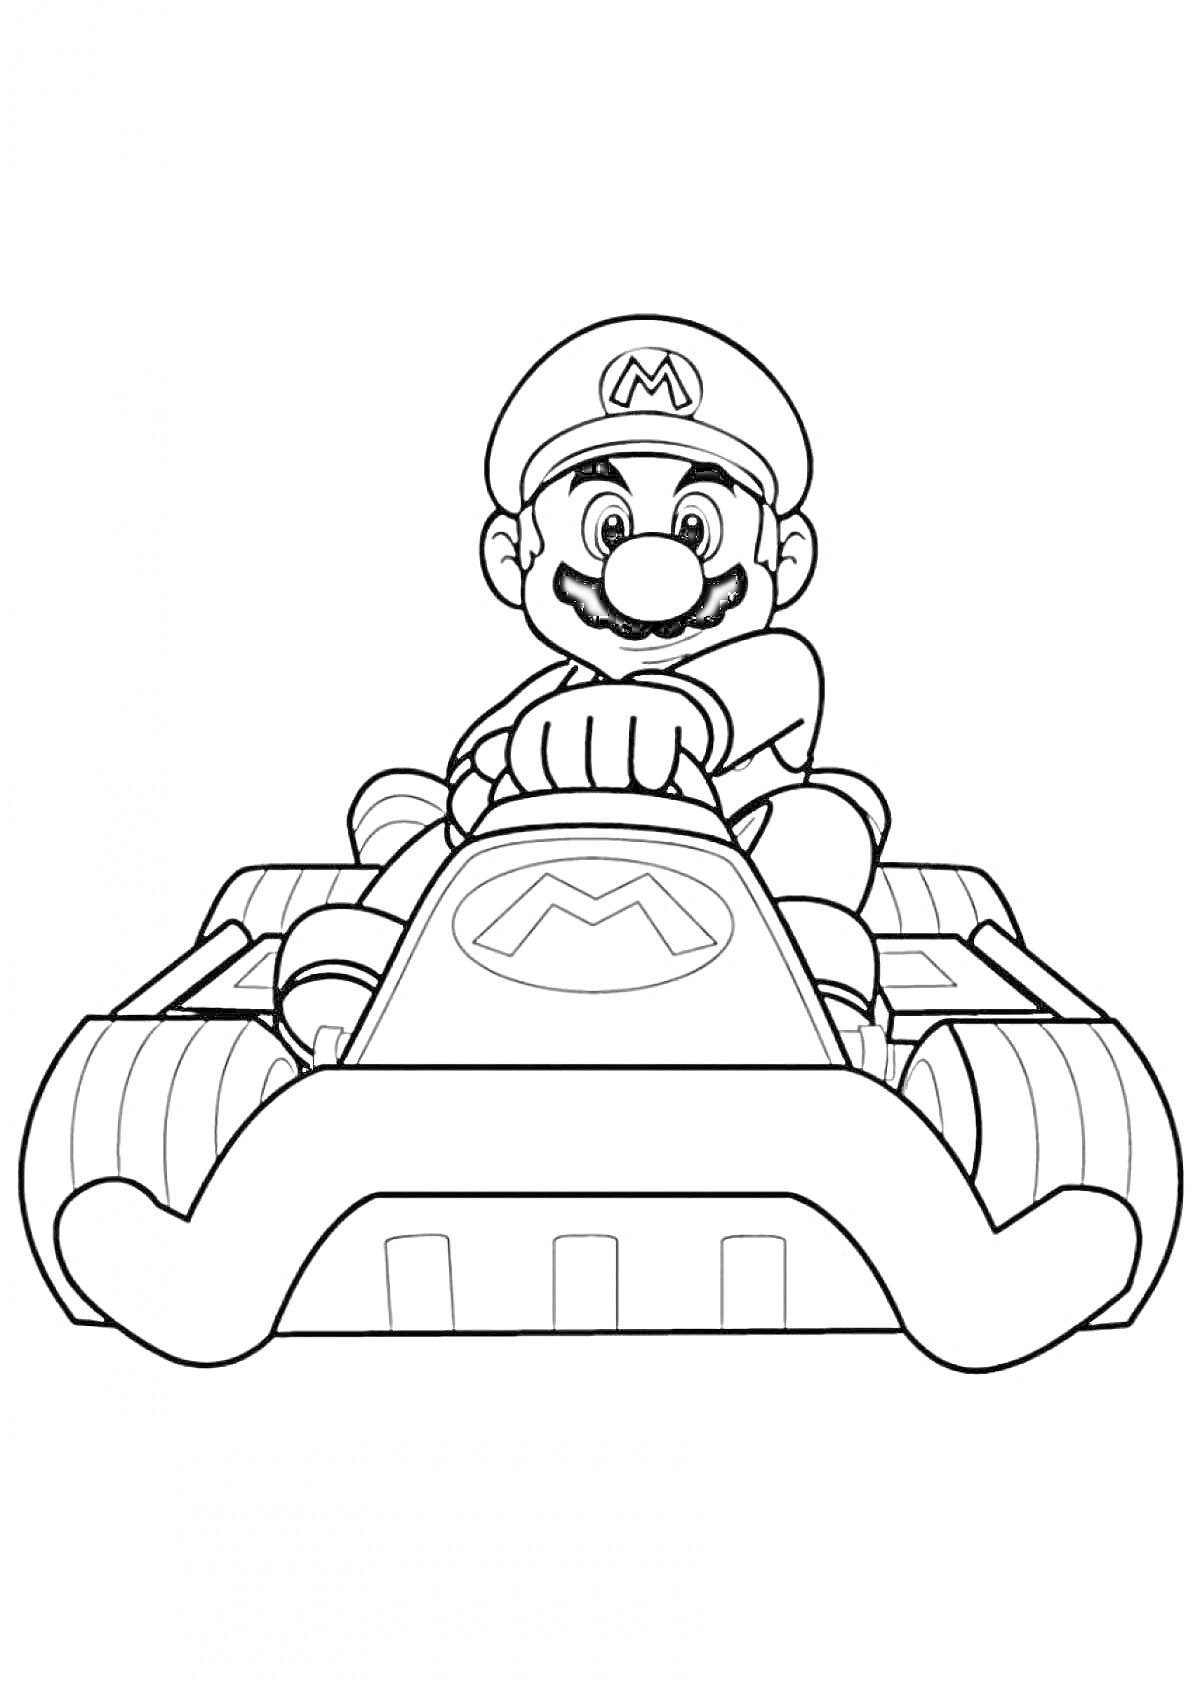 Марио на картинге